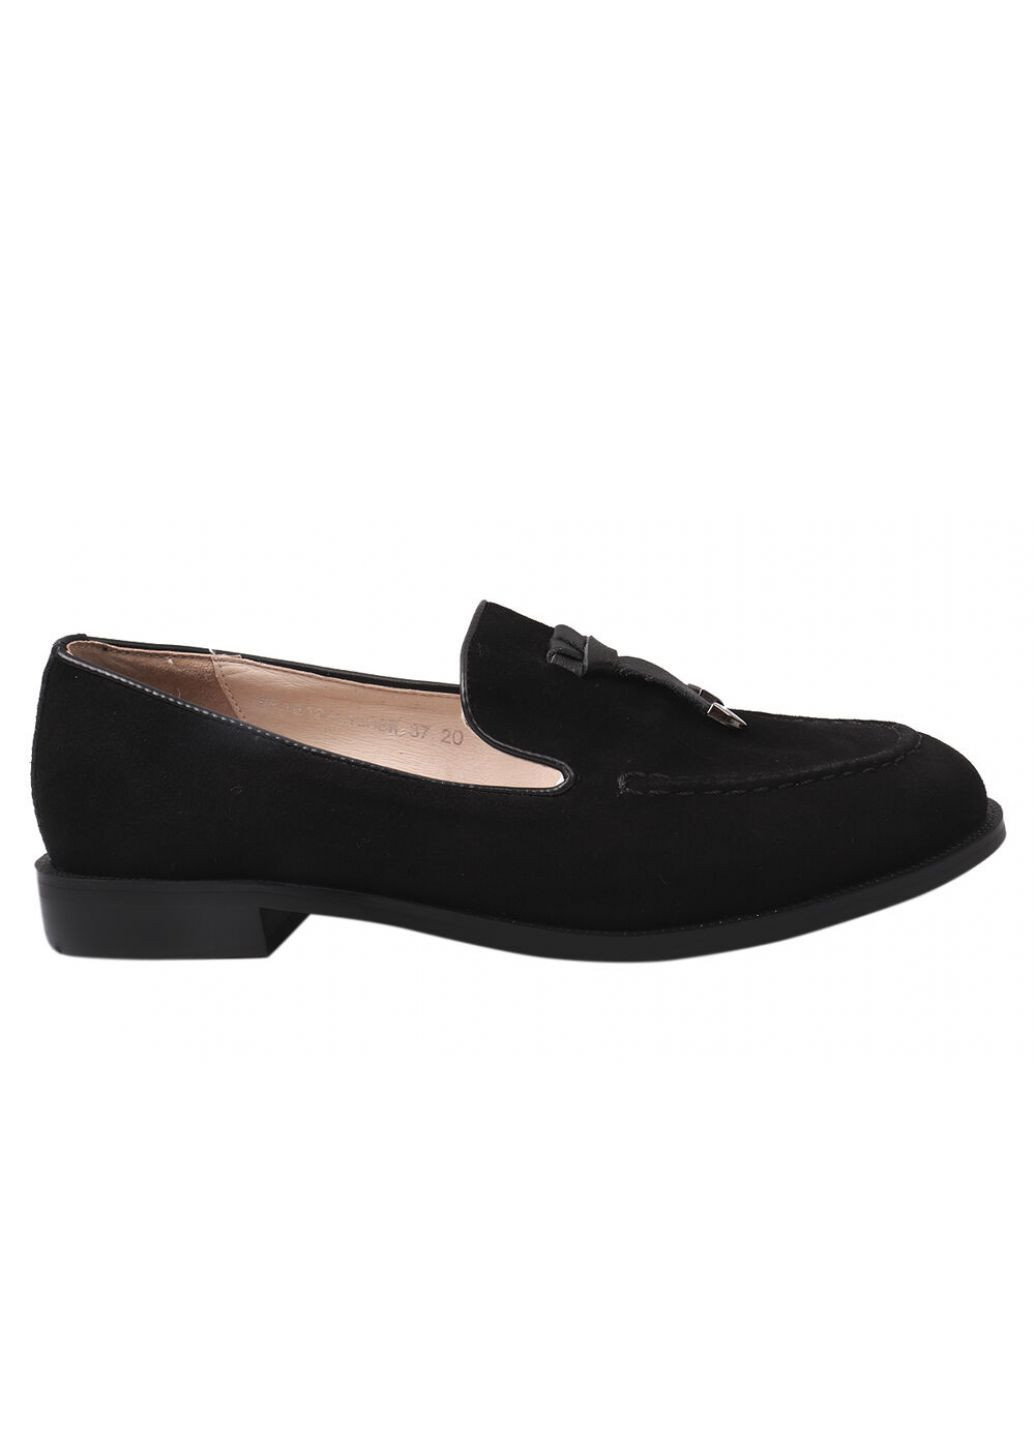 Туфлі жіночі з натуральної замші, на низькому ходу, колір чорний, FARINNI 163-21dtc (257438302)